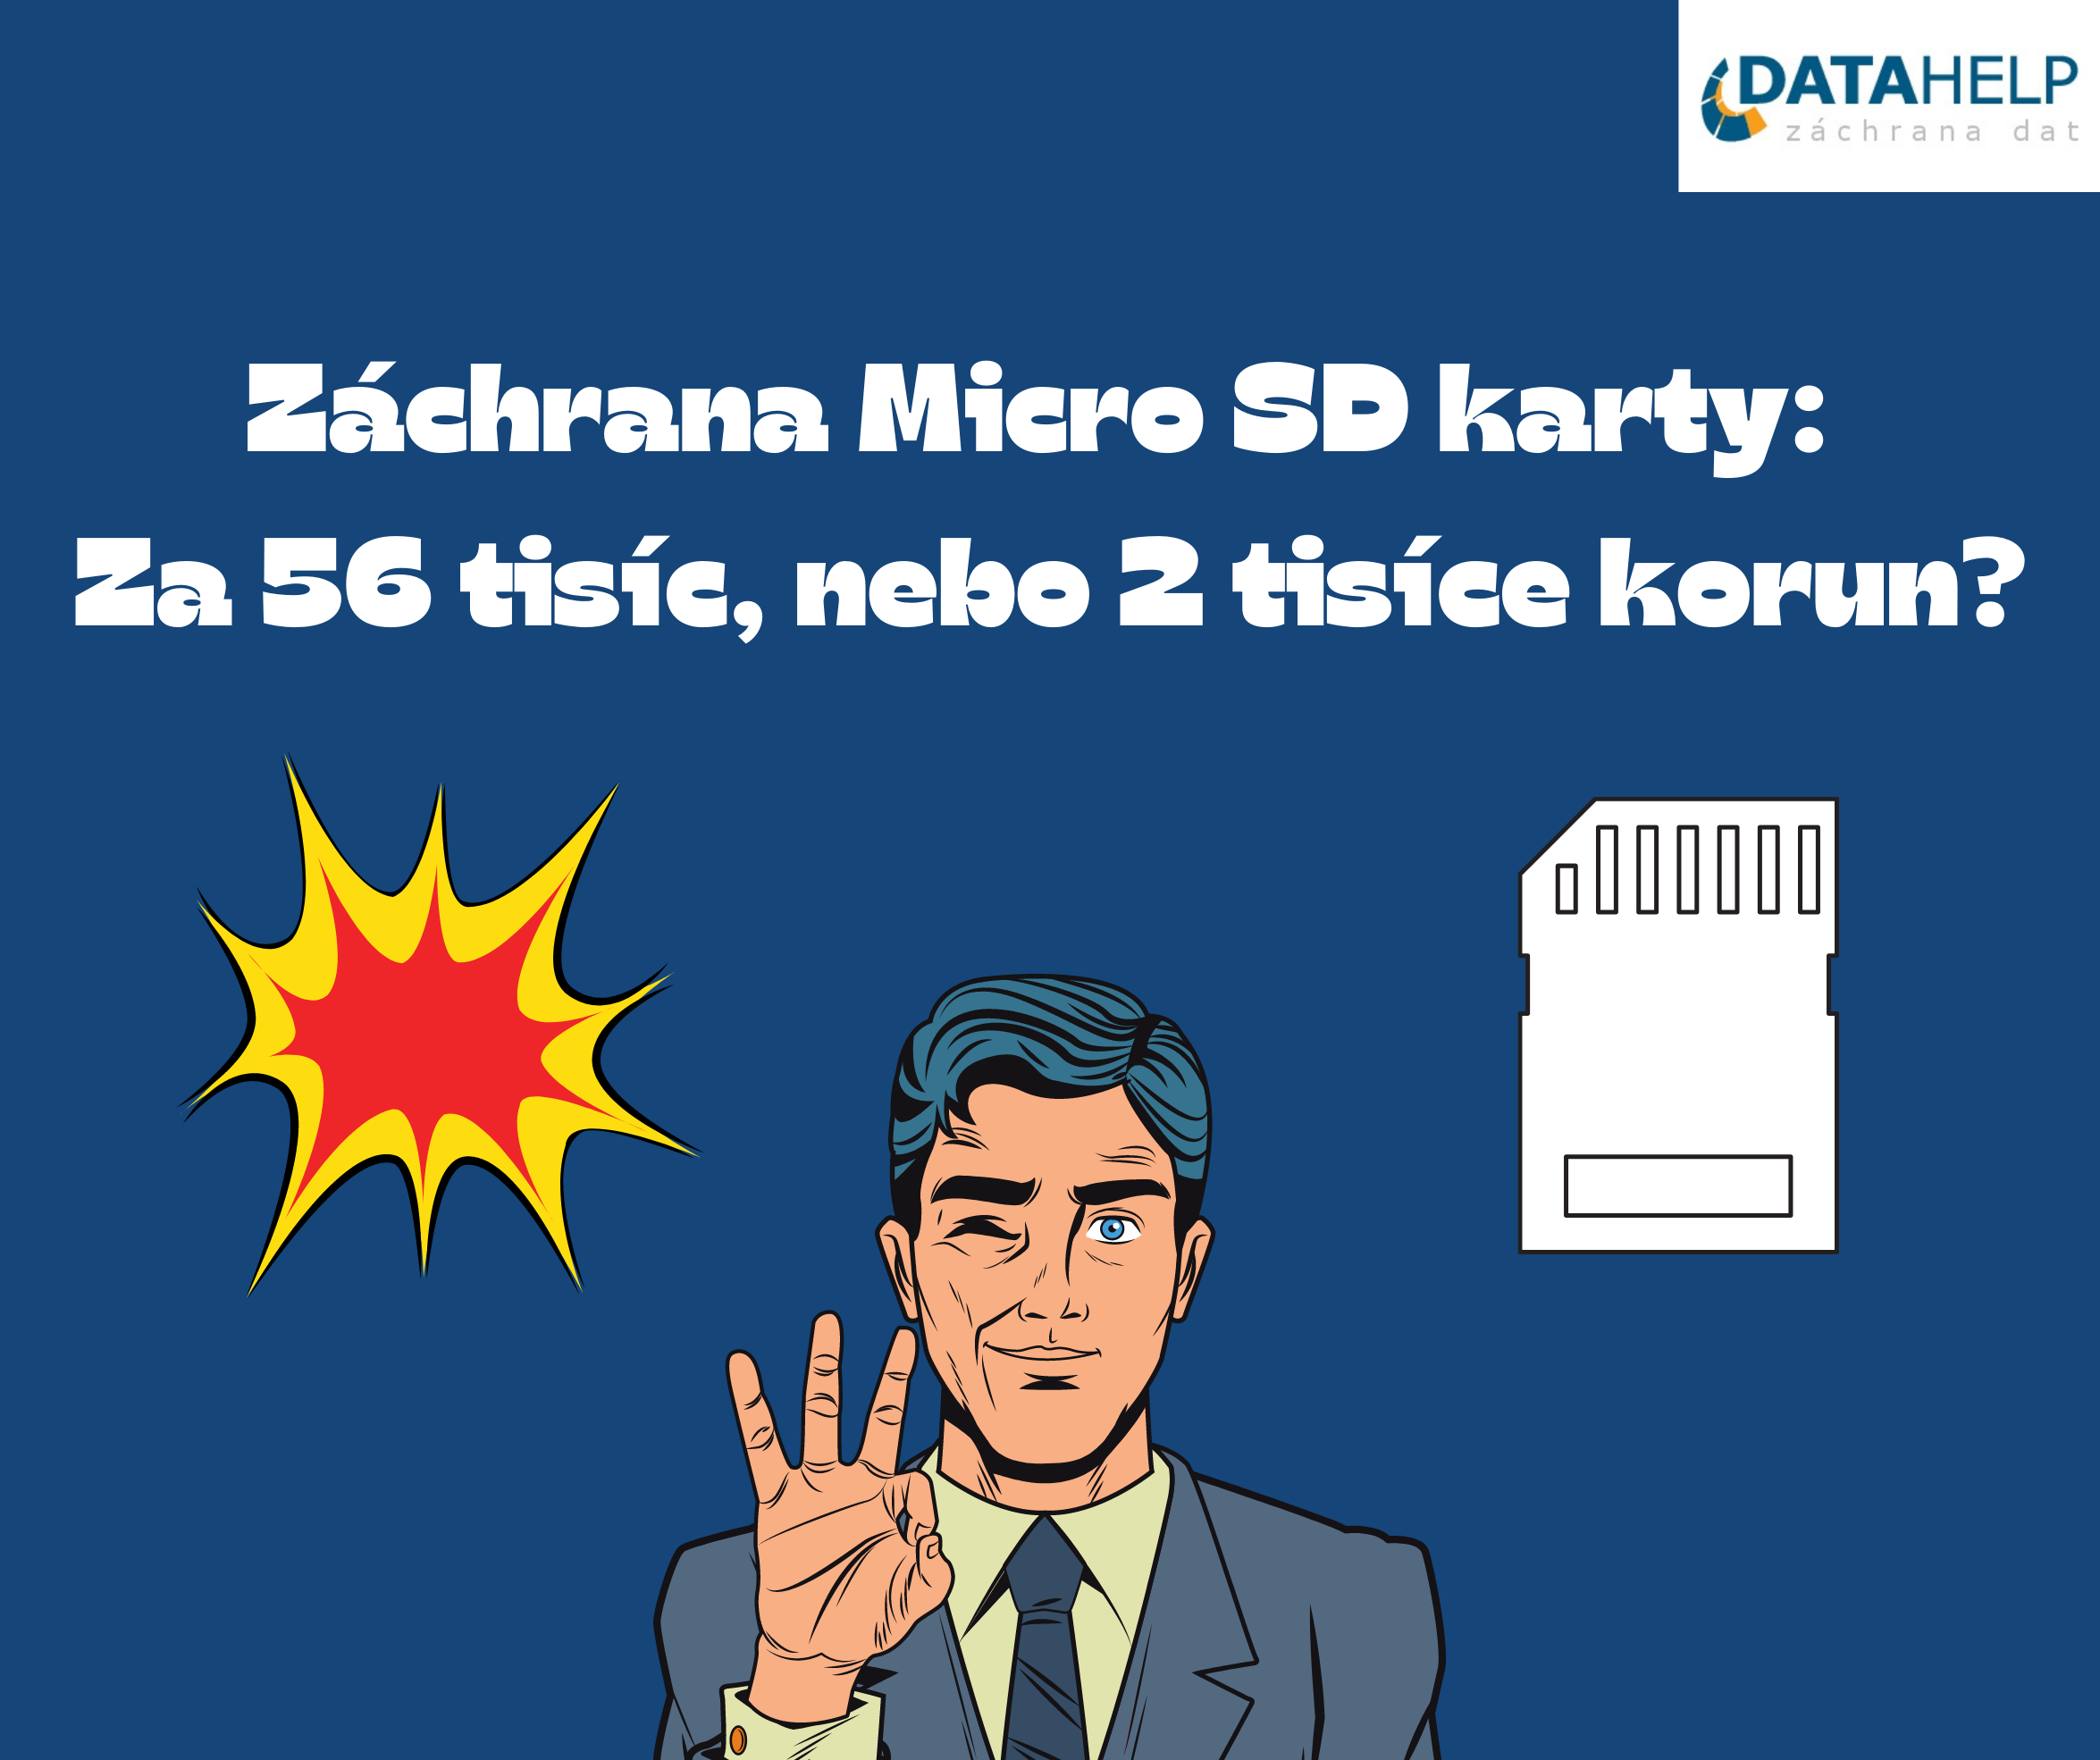 Záchrana Micro SD karty: Za 56 tisíc, nebo 2 tisíce korun?